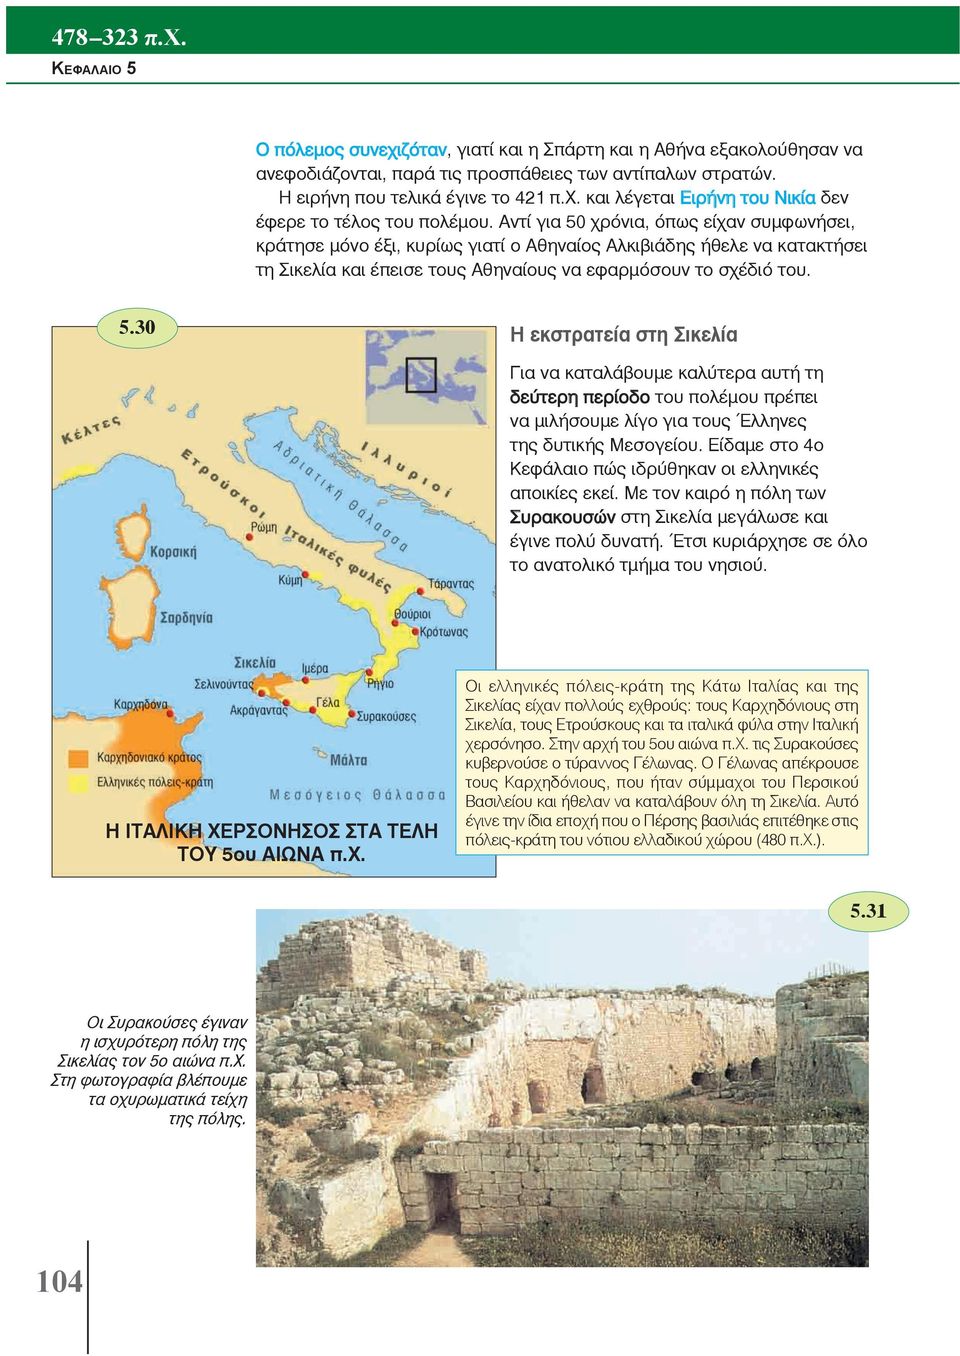 Είδαμε στο 4ο Κεφάλαιο πώς ιδρύθηκαν οι ελληνικές αποικίες εκεί. Με τον καιρό η πόλη των Συρακουσών στη Σικελία μεγάλωσε και έγινε πολύ δυνατή. Έτσι κυριάρχησε σε όλο το ανατολικό τμήμα του νησιού.